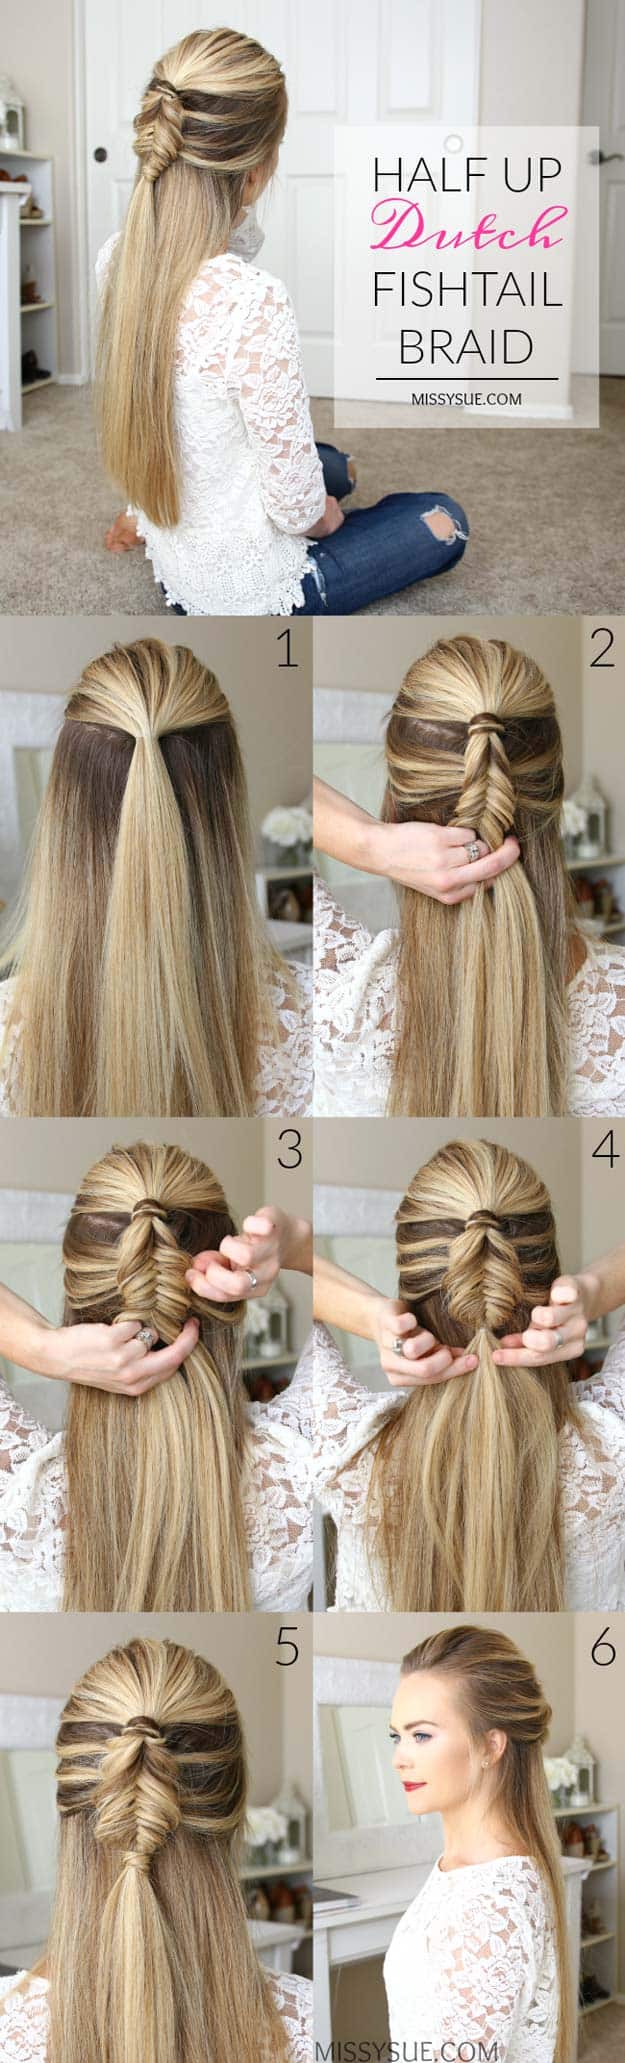 15 creative hair braiding tutorials and styles from a half Dutch fishtail braid